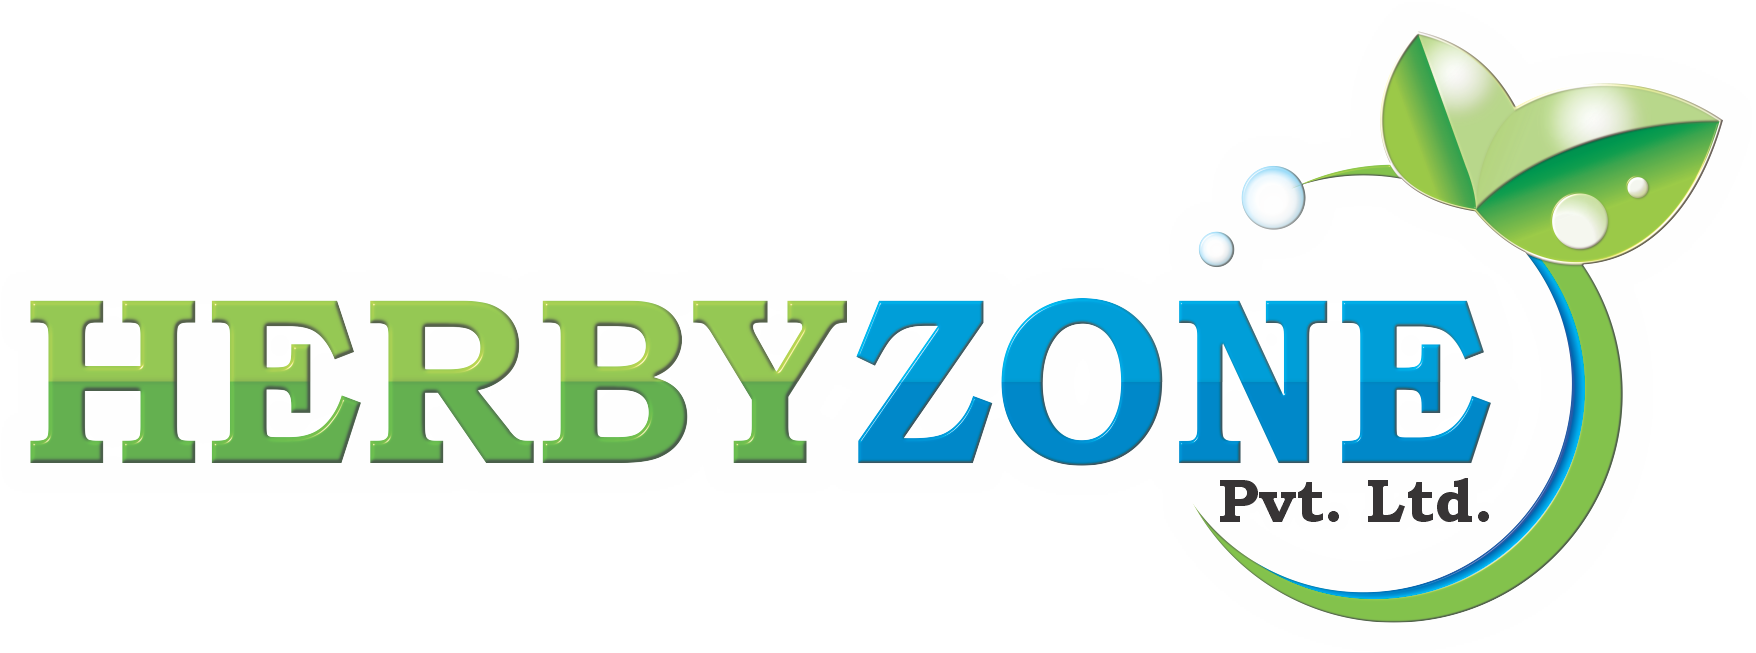 HERBYZONE Pvt Ltd Logo